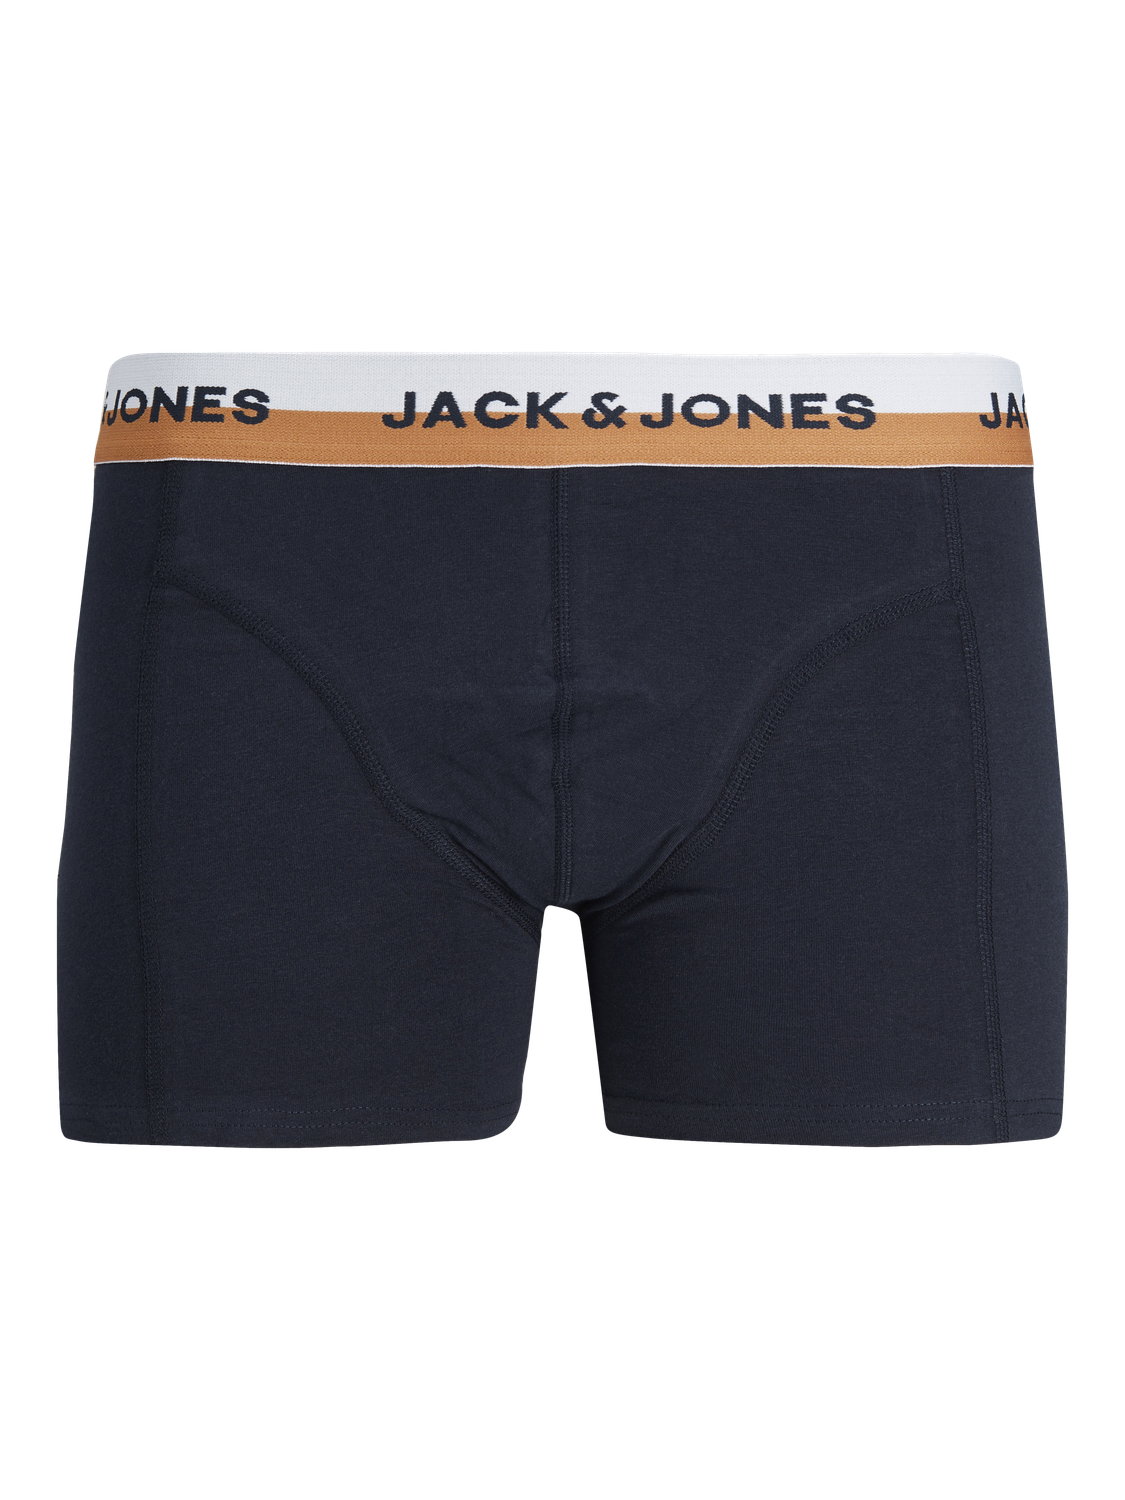 Jack & Jones 3-pack Boxers -Black - 12243343